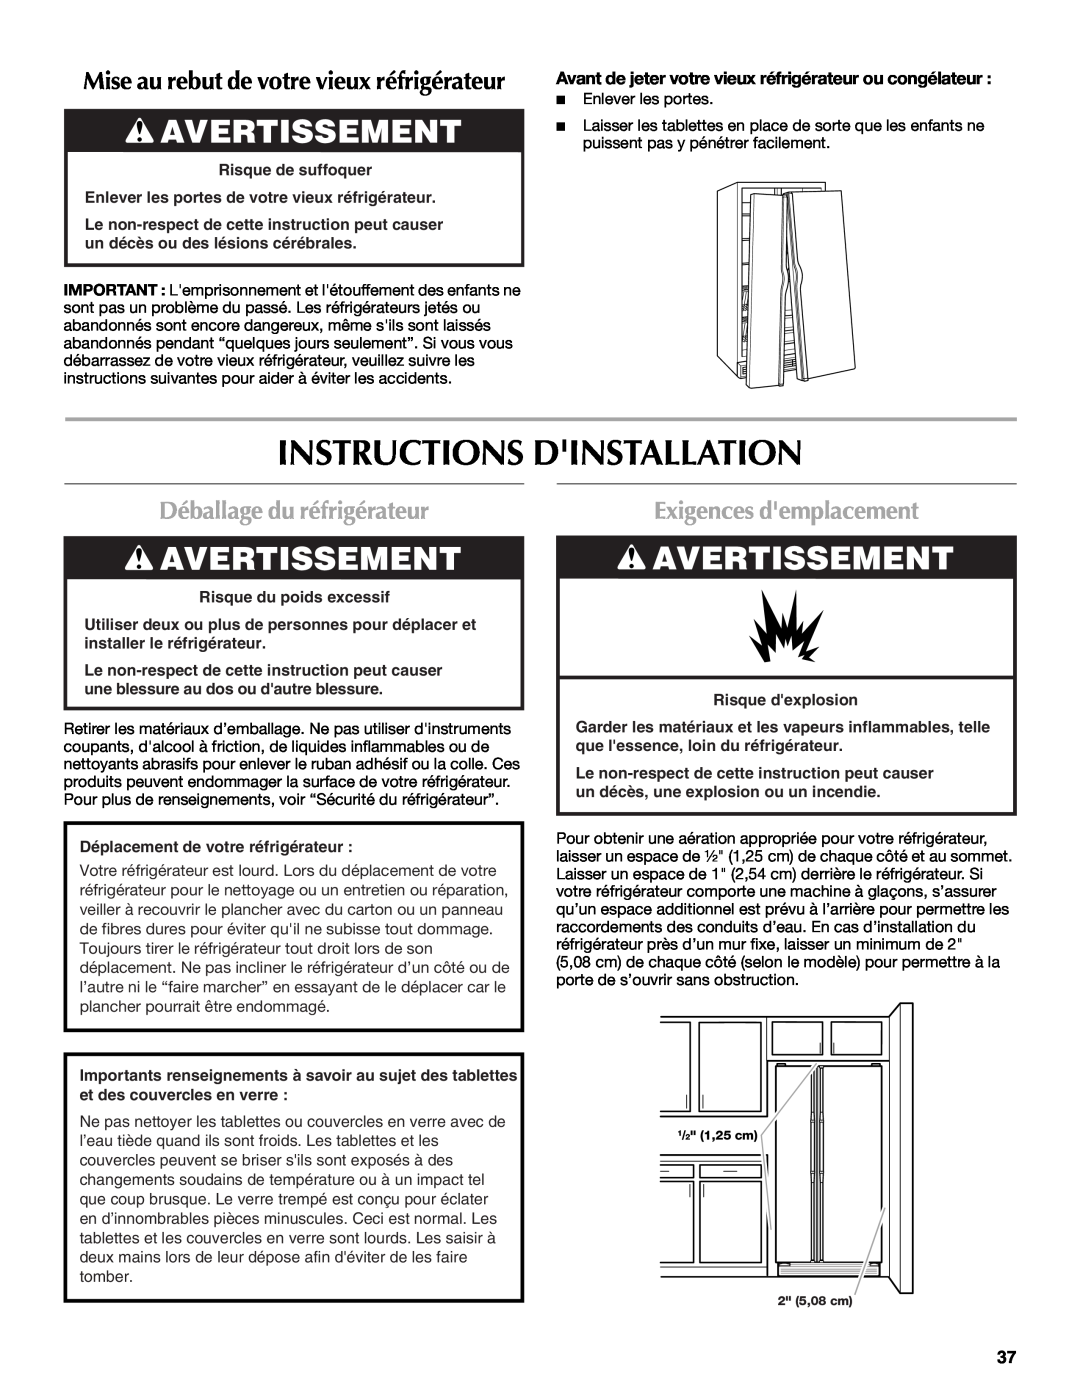 Maytag W10321477A Instructions Dinstallation, Avertissement, Déballage du réfrigérateur, Exigences demplacement 